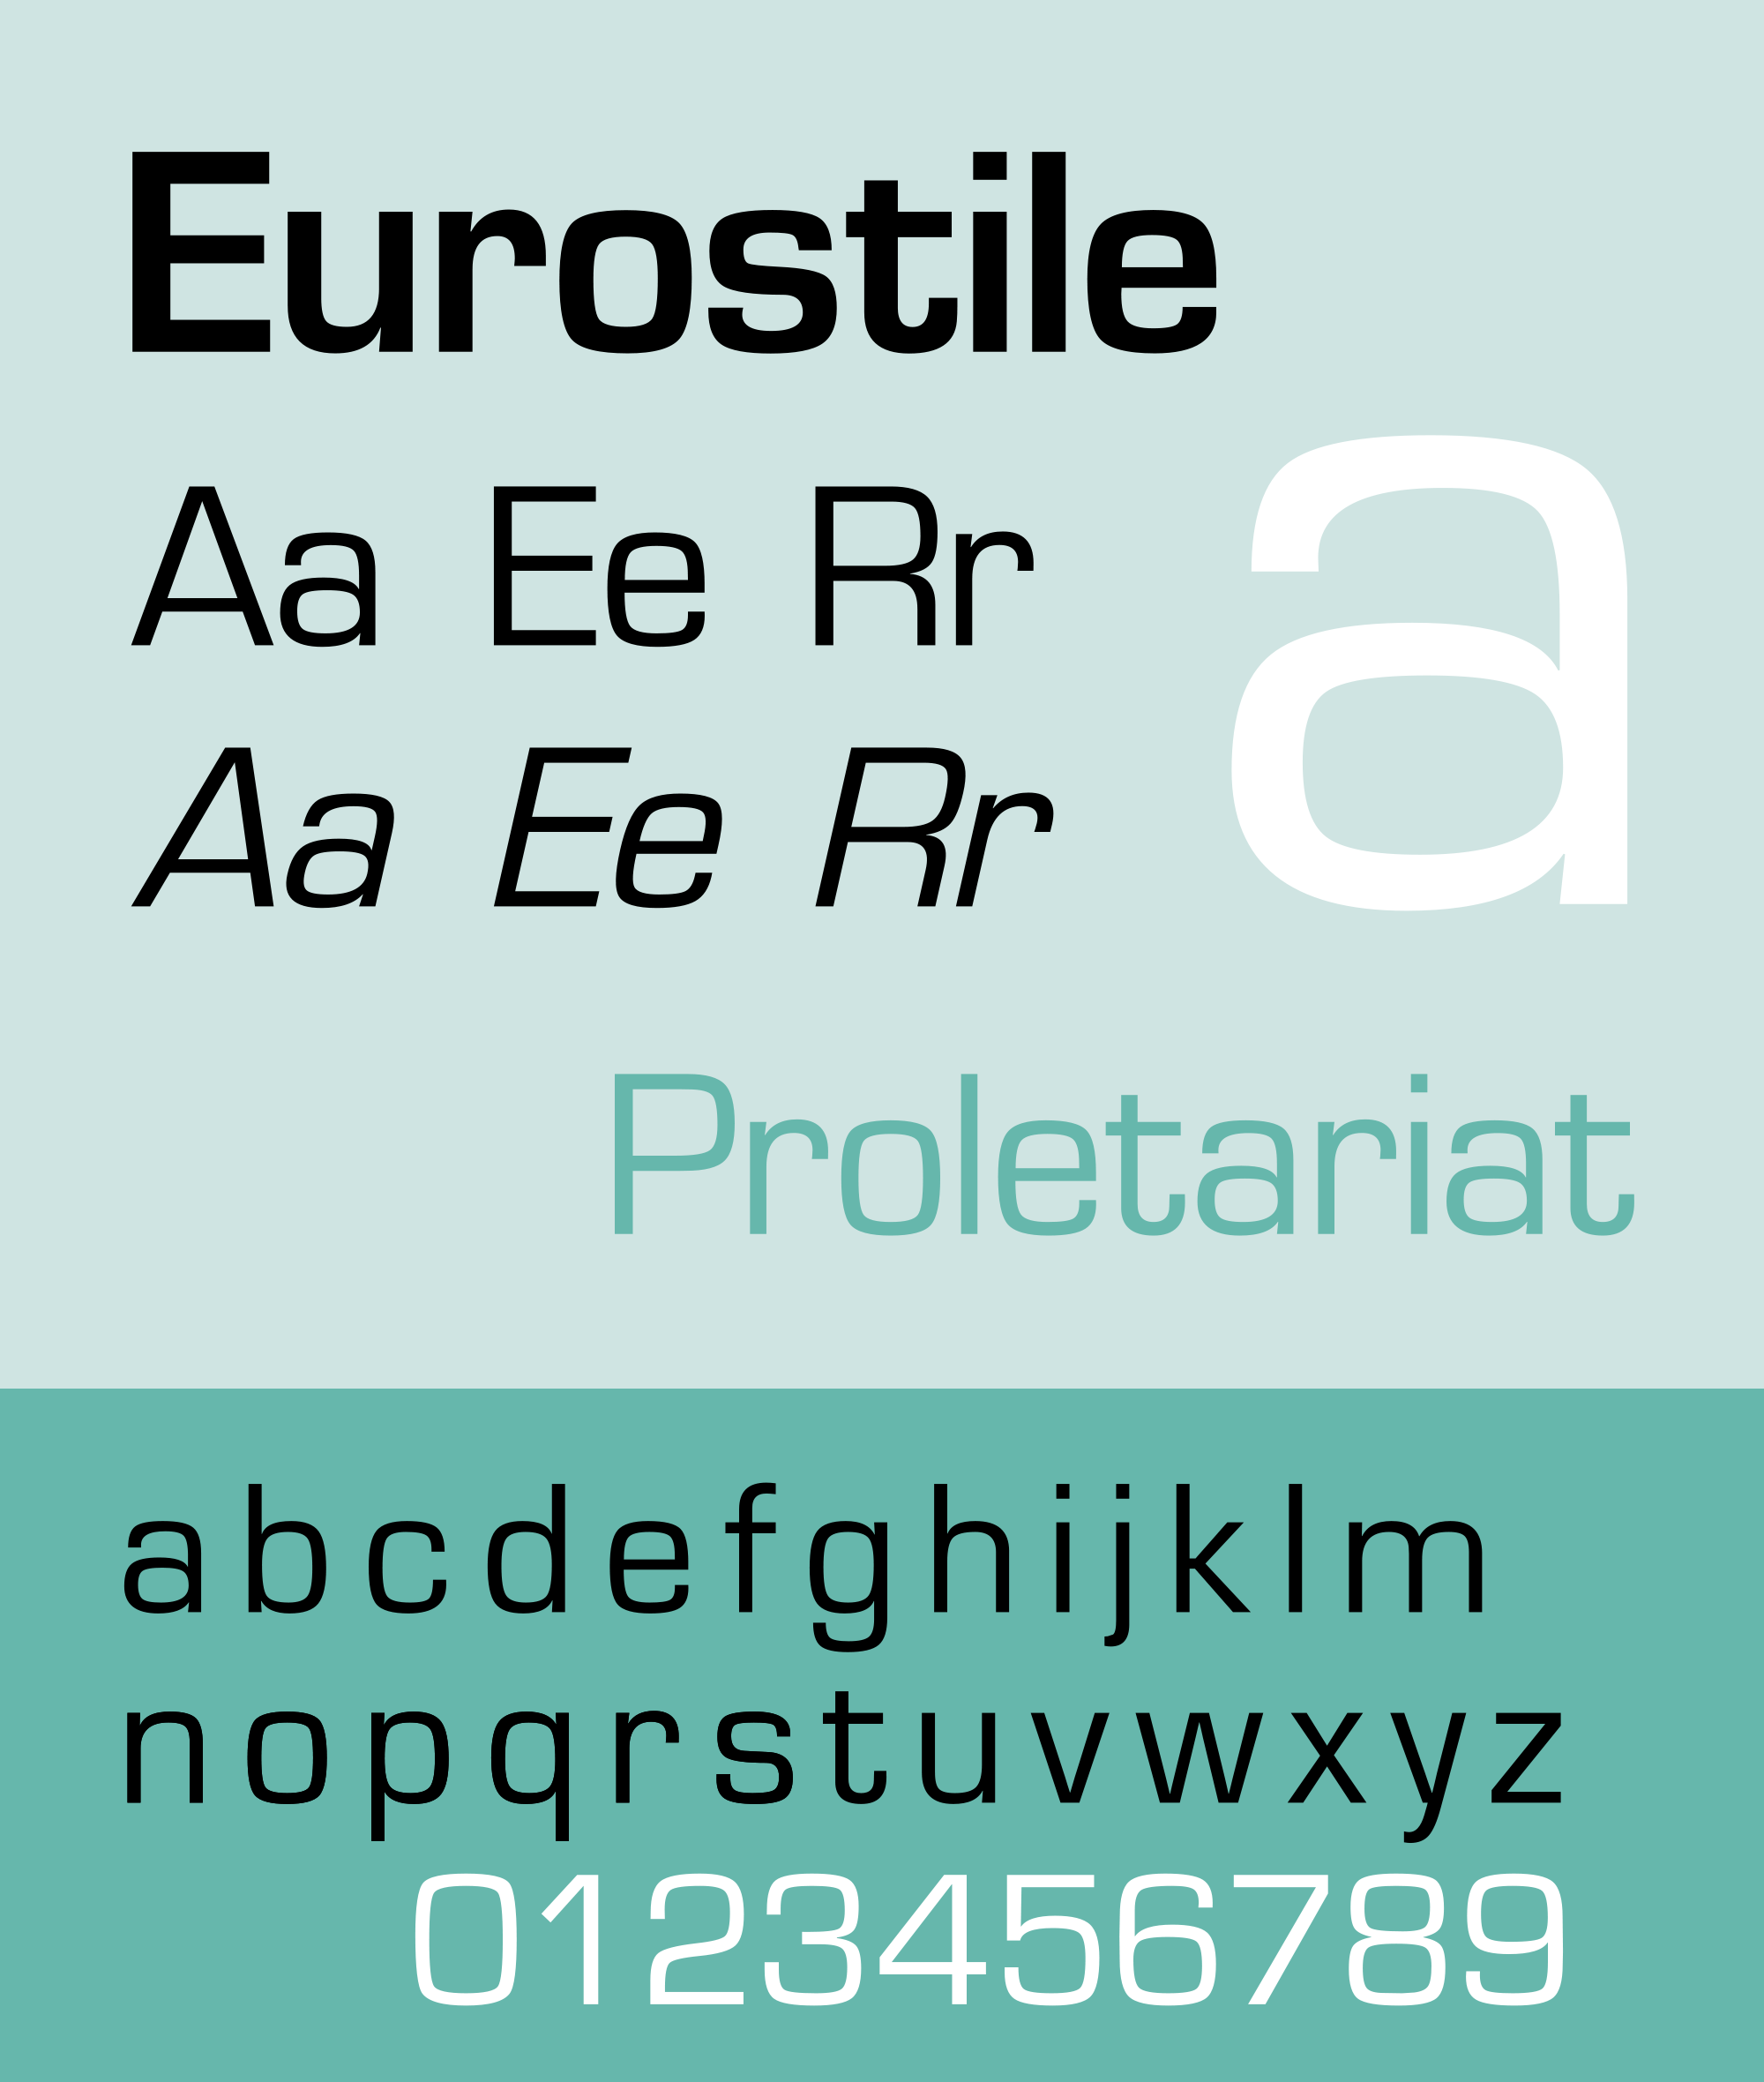 Las tipografías más utilizadas en publicidad: Eurostile